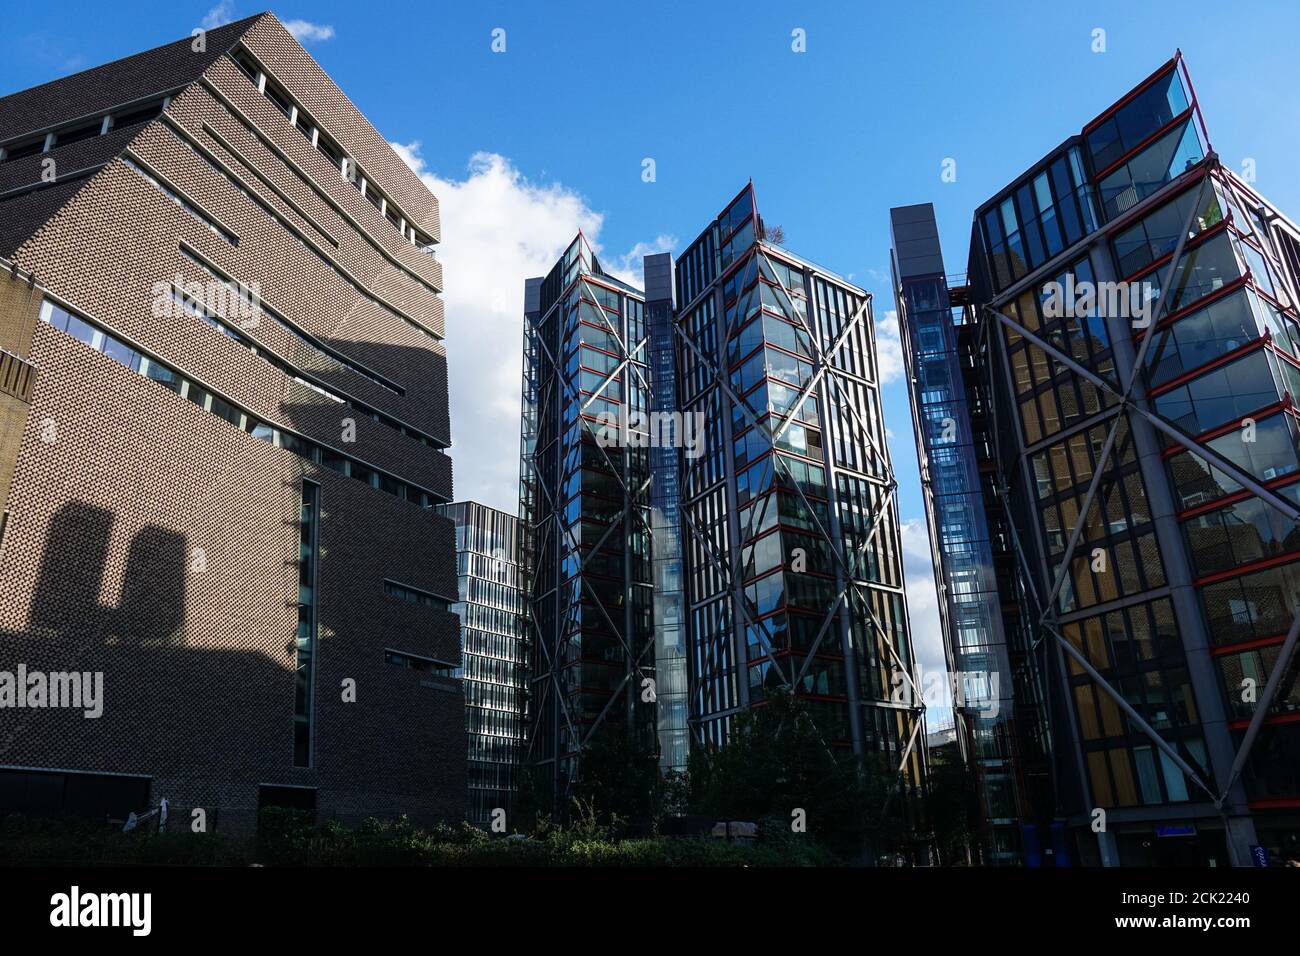 Le niveau de visualisation à Tate Modern et Neo Bankside appartements résidentiels de luxe à Londres Angleterre Royaume-Uni Banque D'Images